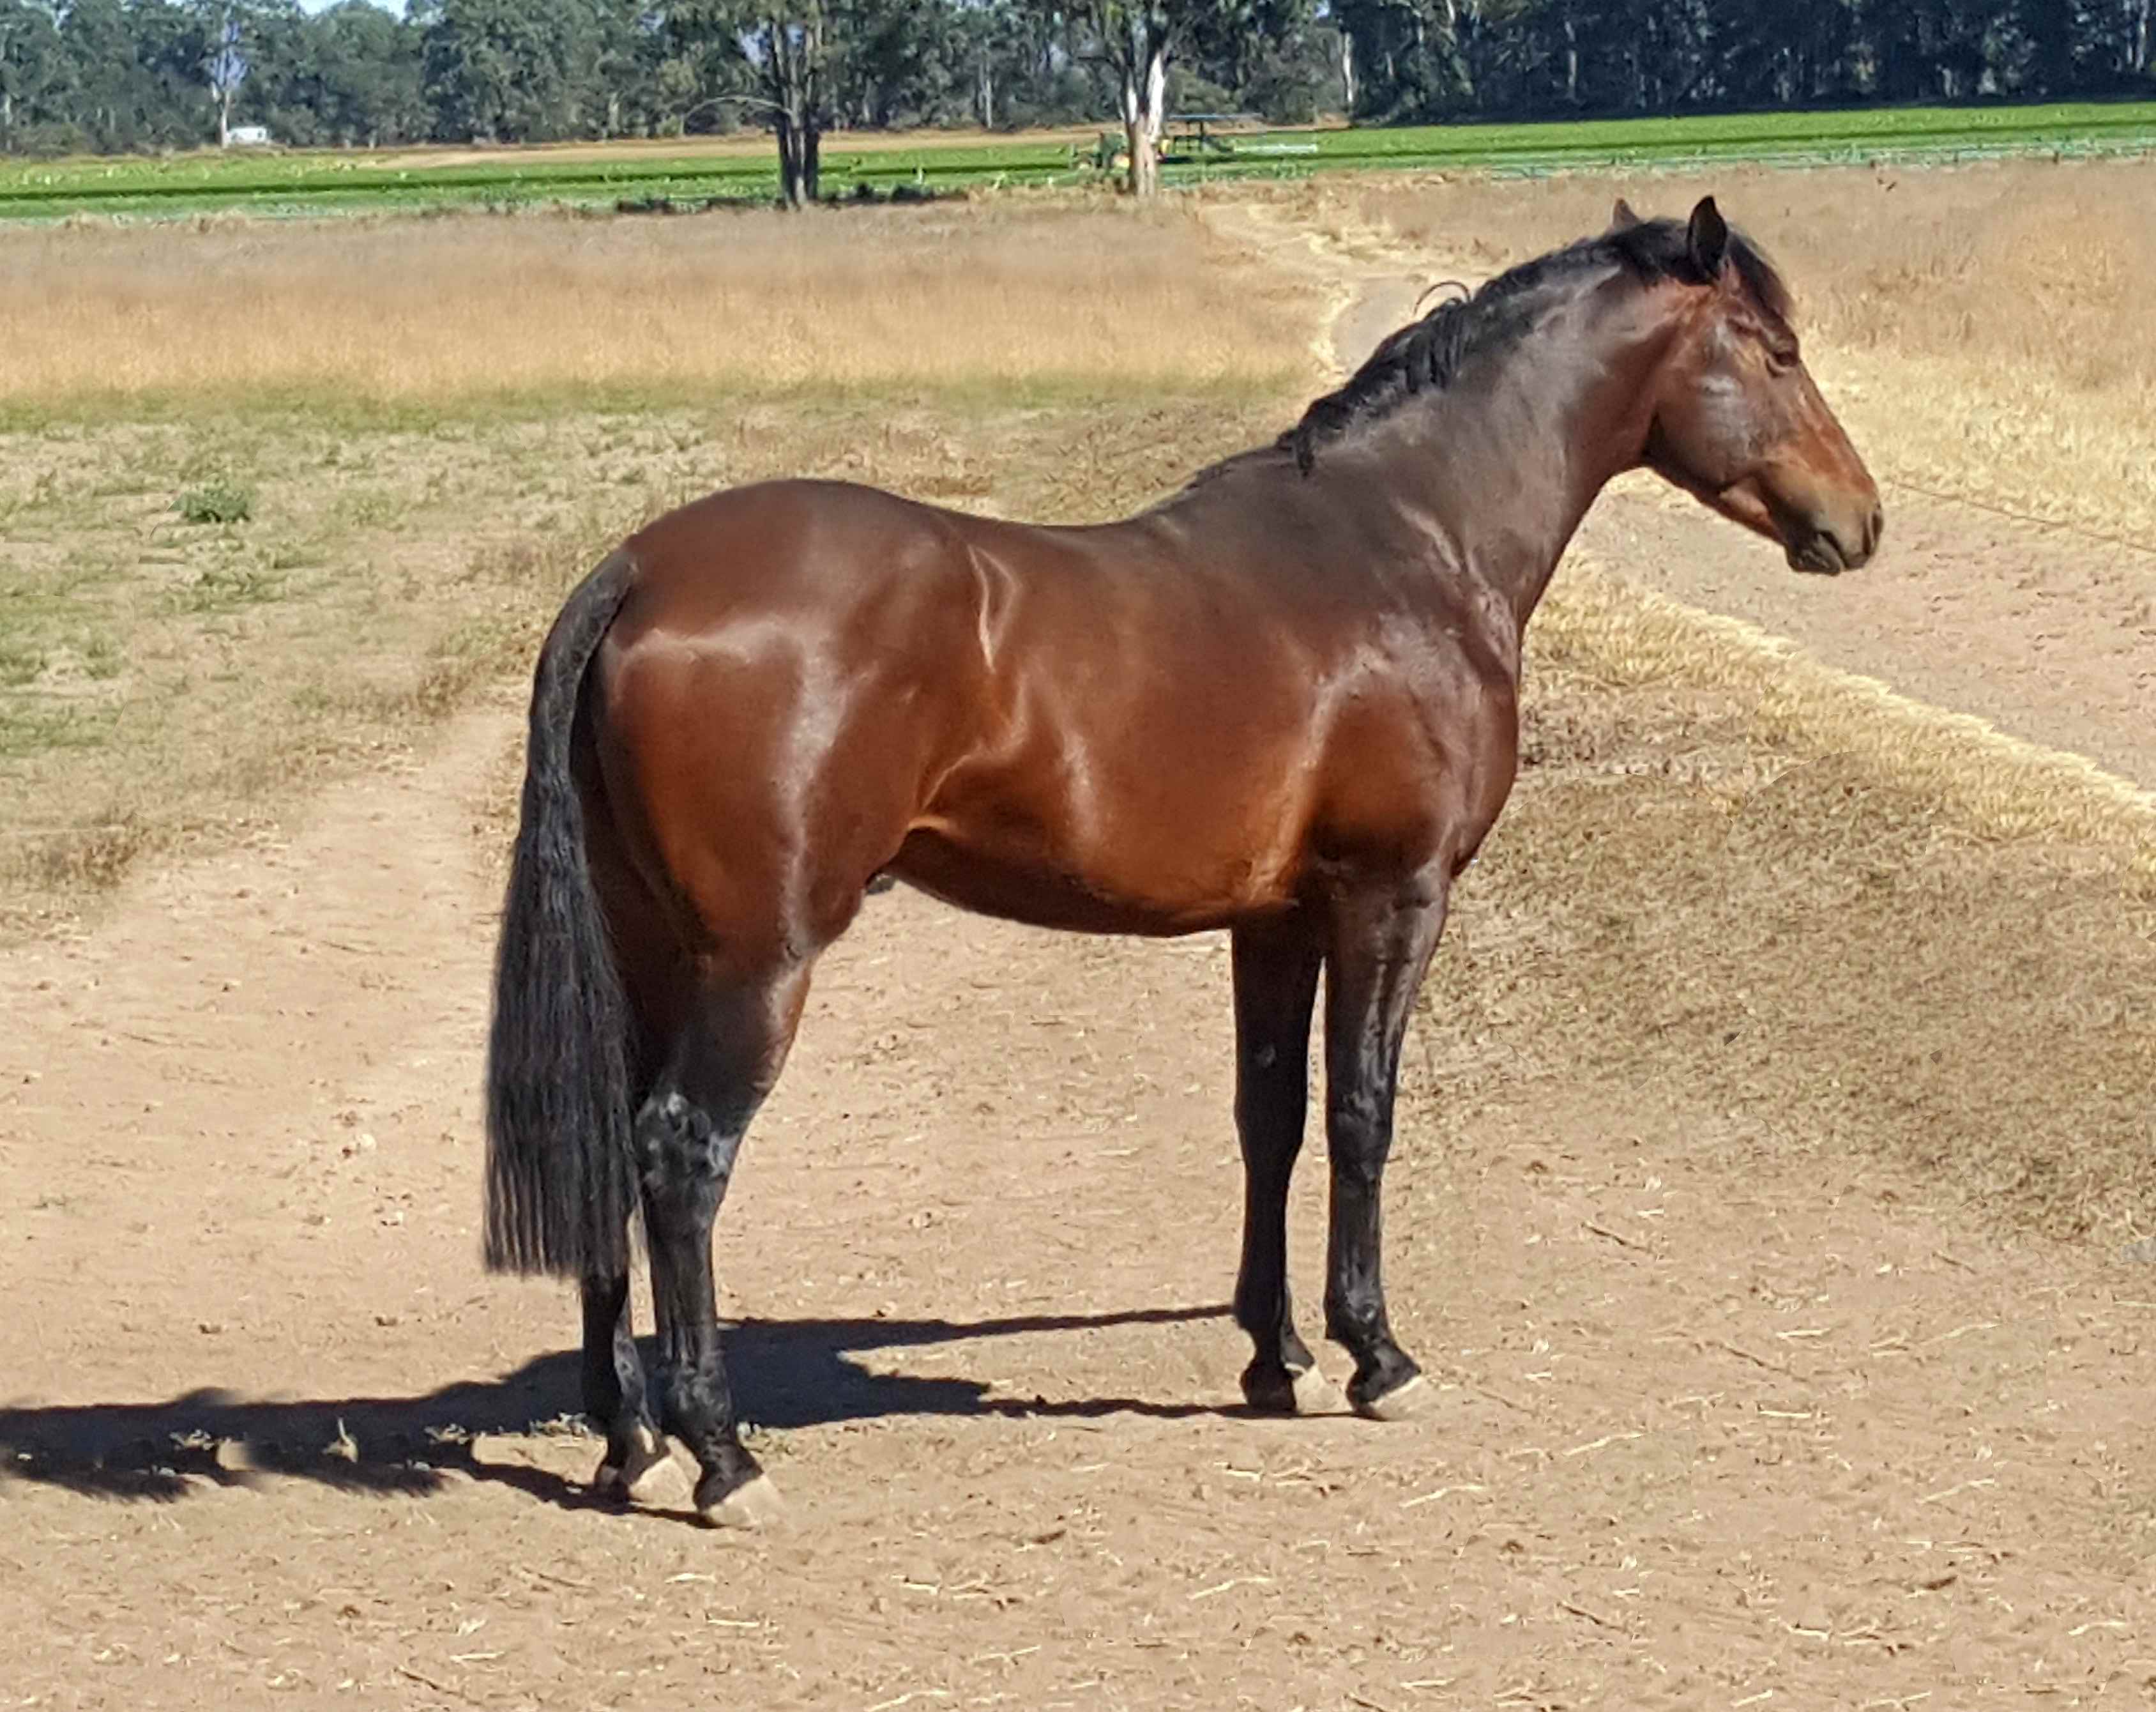 Our Waler colt taken in September 2017